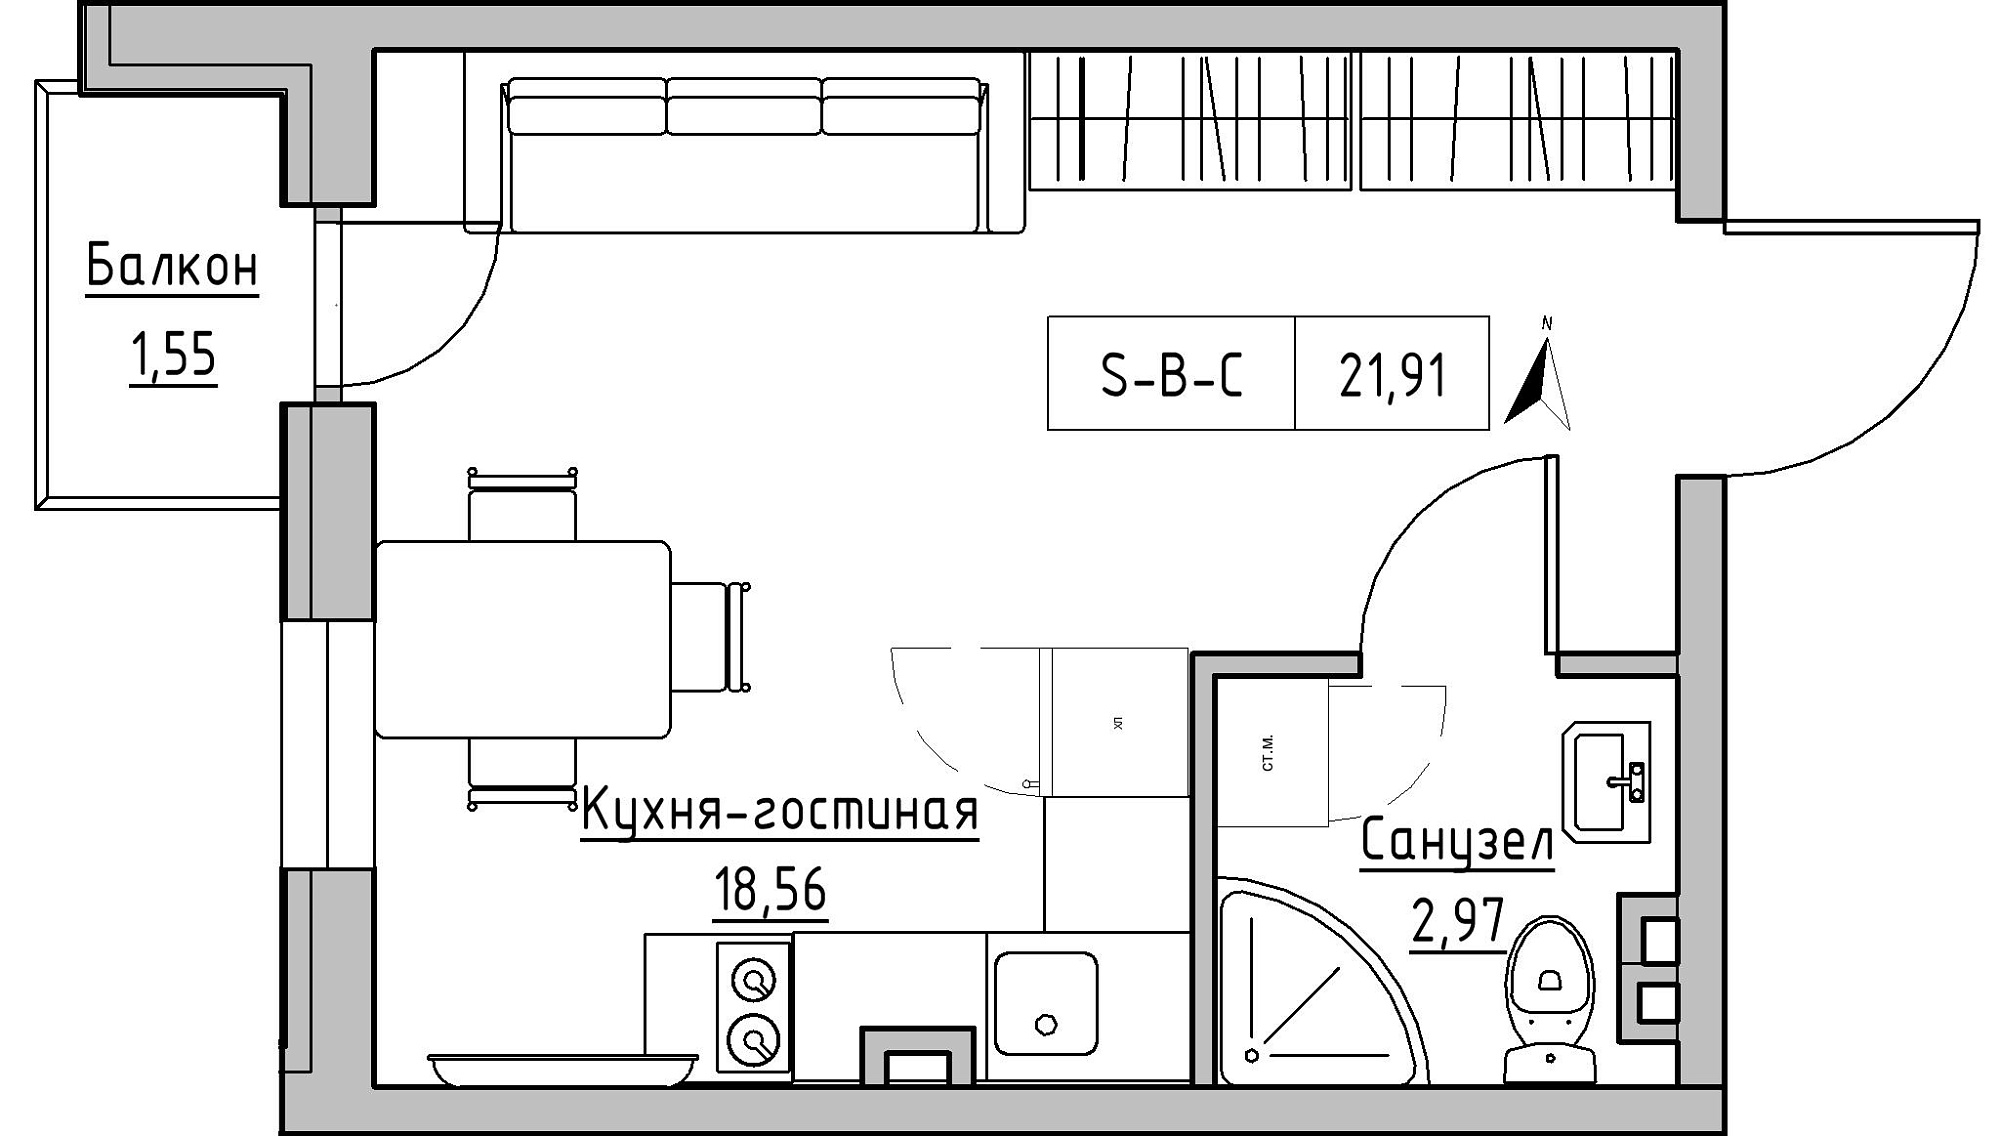 Планування Smart-квартира площею 21.91м2, KS-024-03/0012.